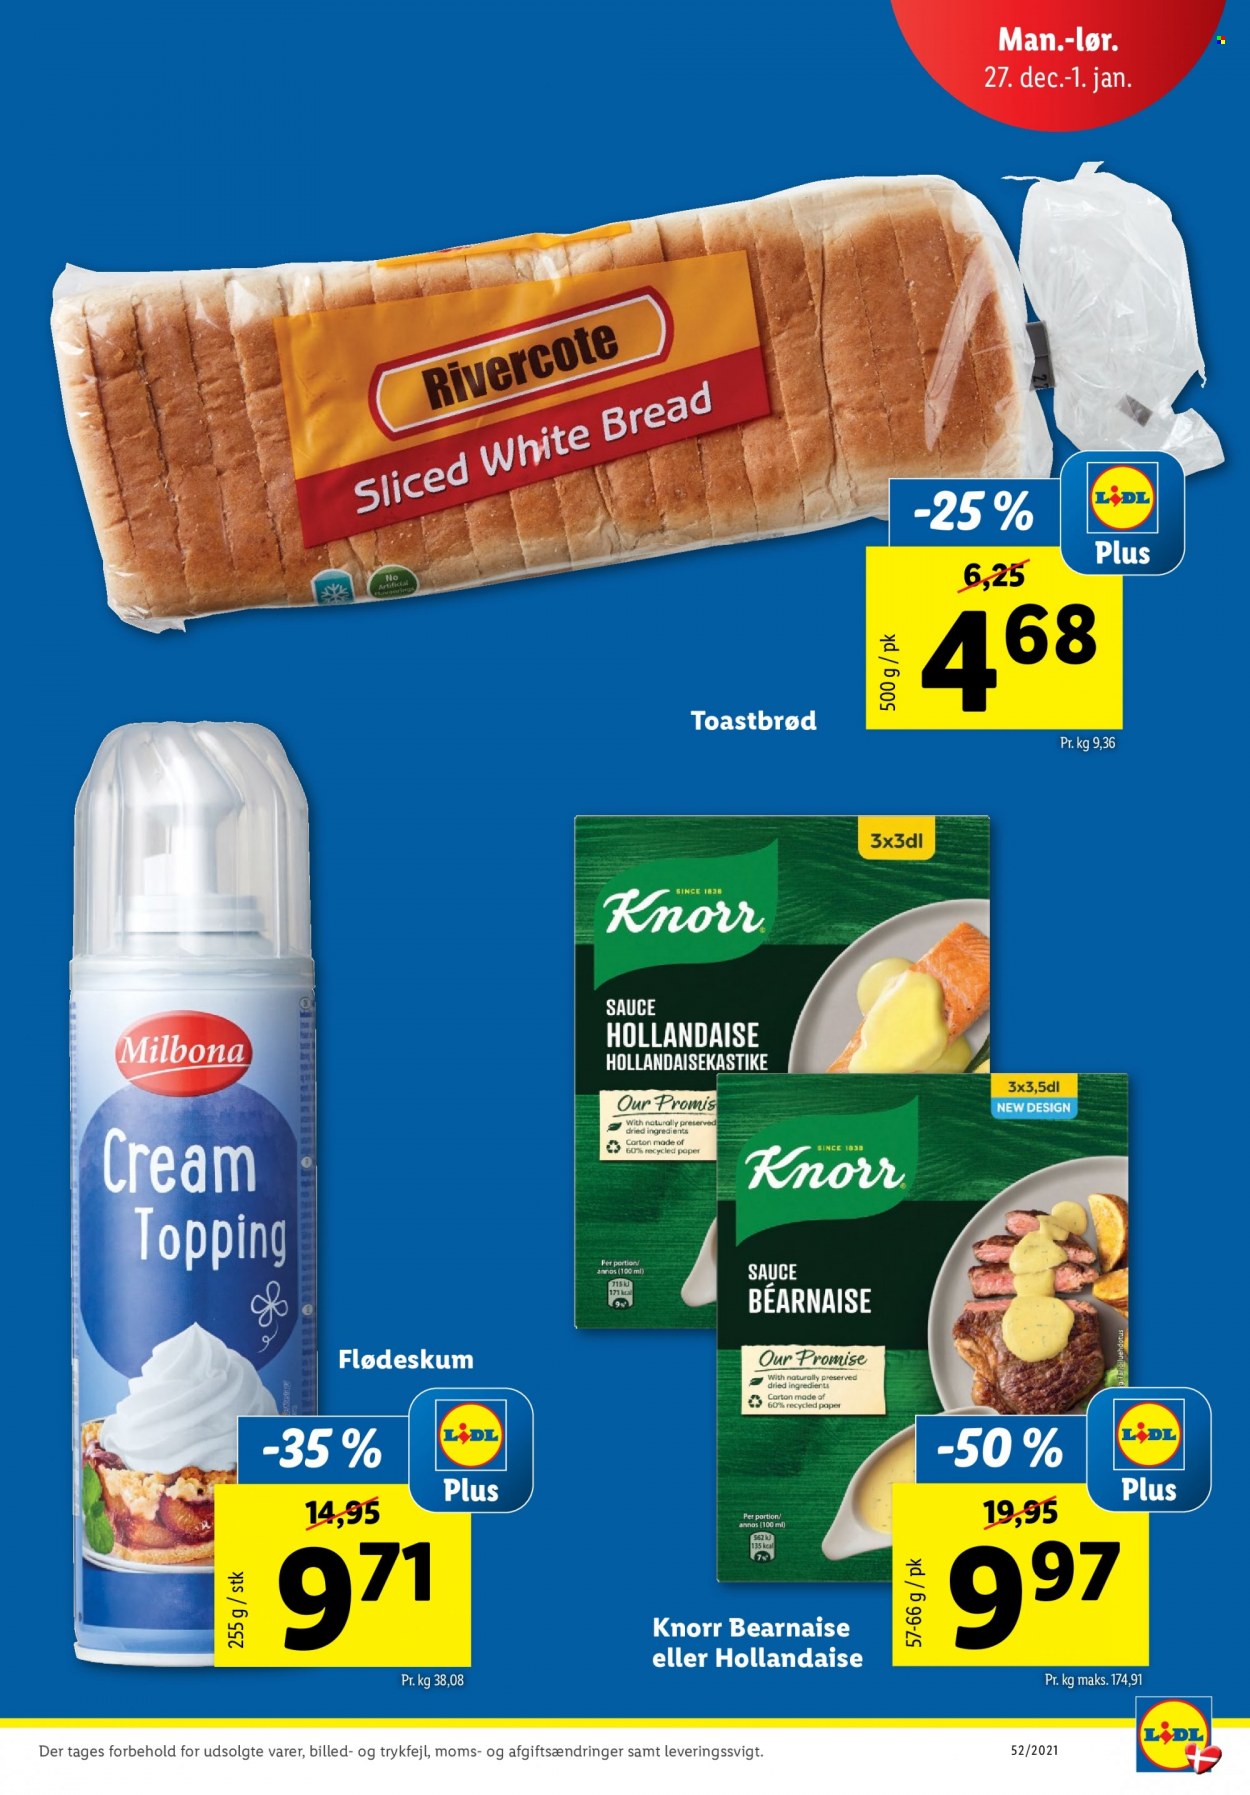 thumbnail - Lidl tilbud  - 27.12.2021 - 1.1.2022 - tilbudsprodukter - Knorr, Milbona, flødeskum, sauce, topping. Side 3.